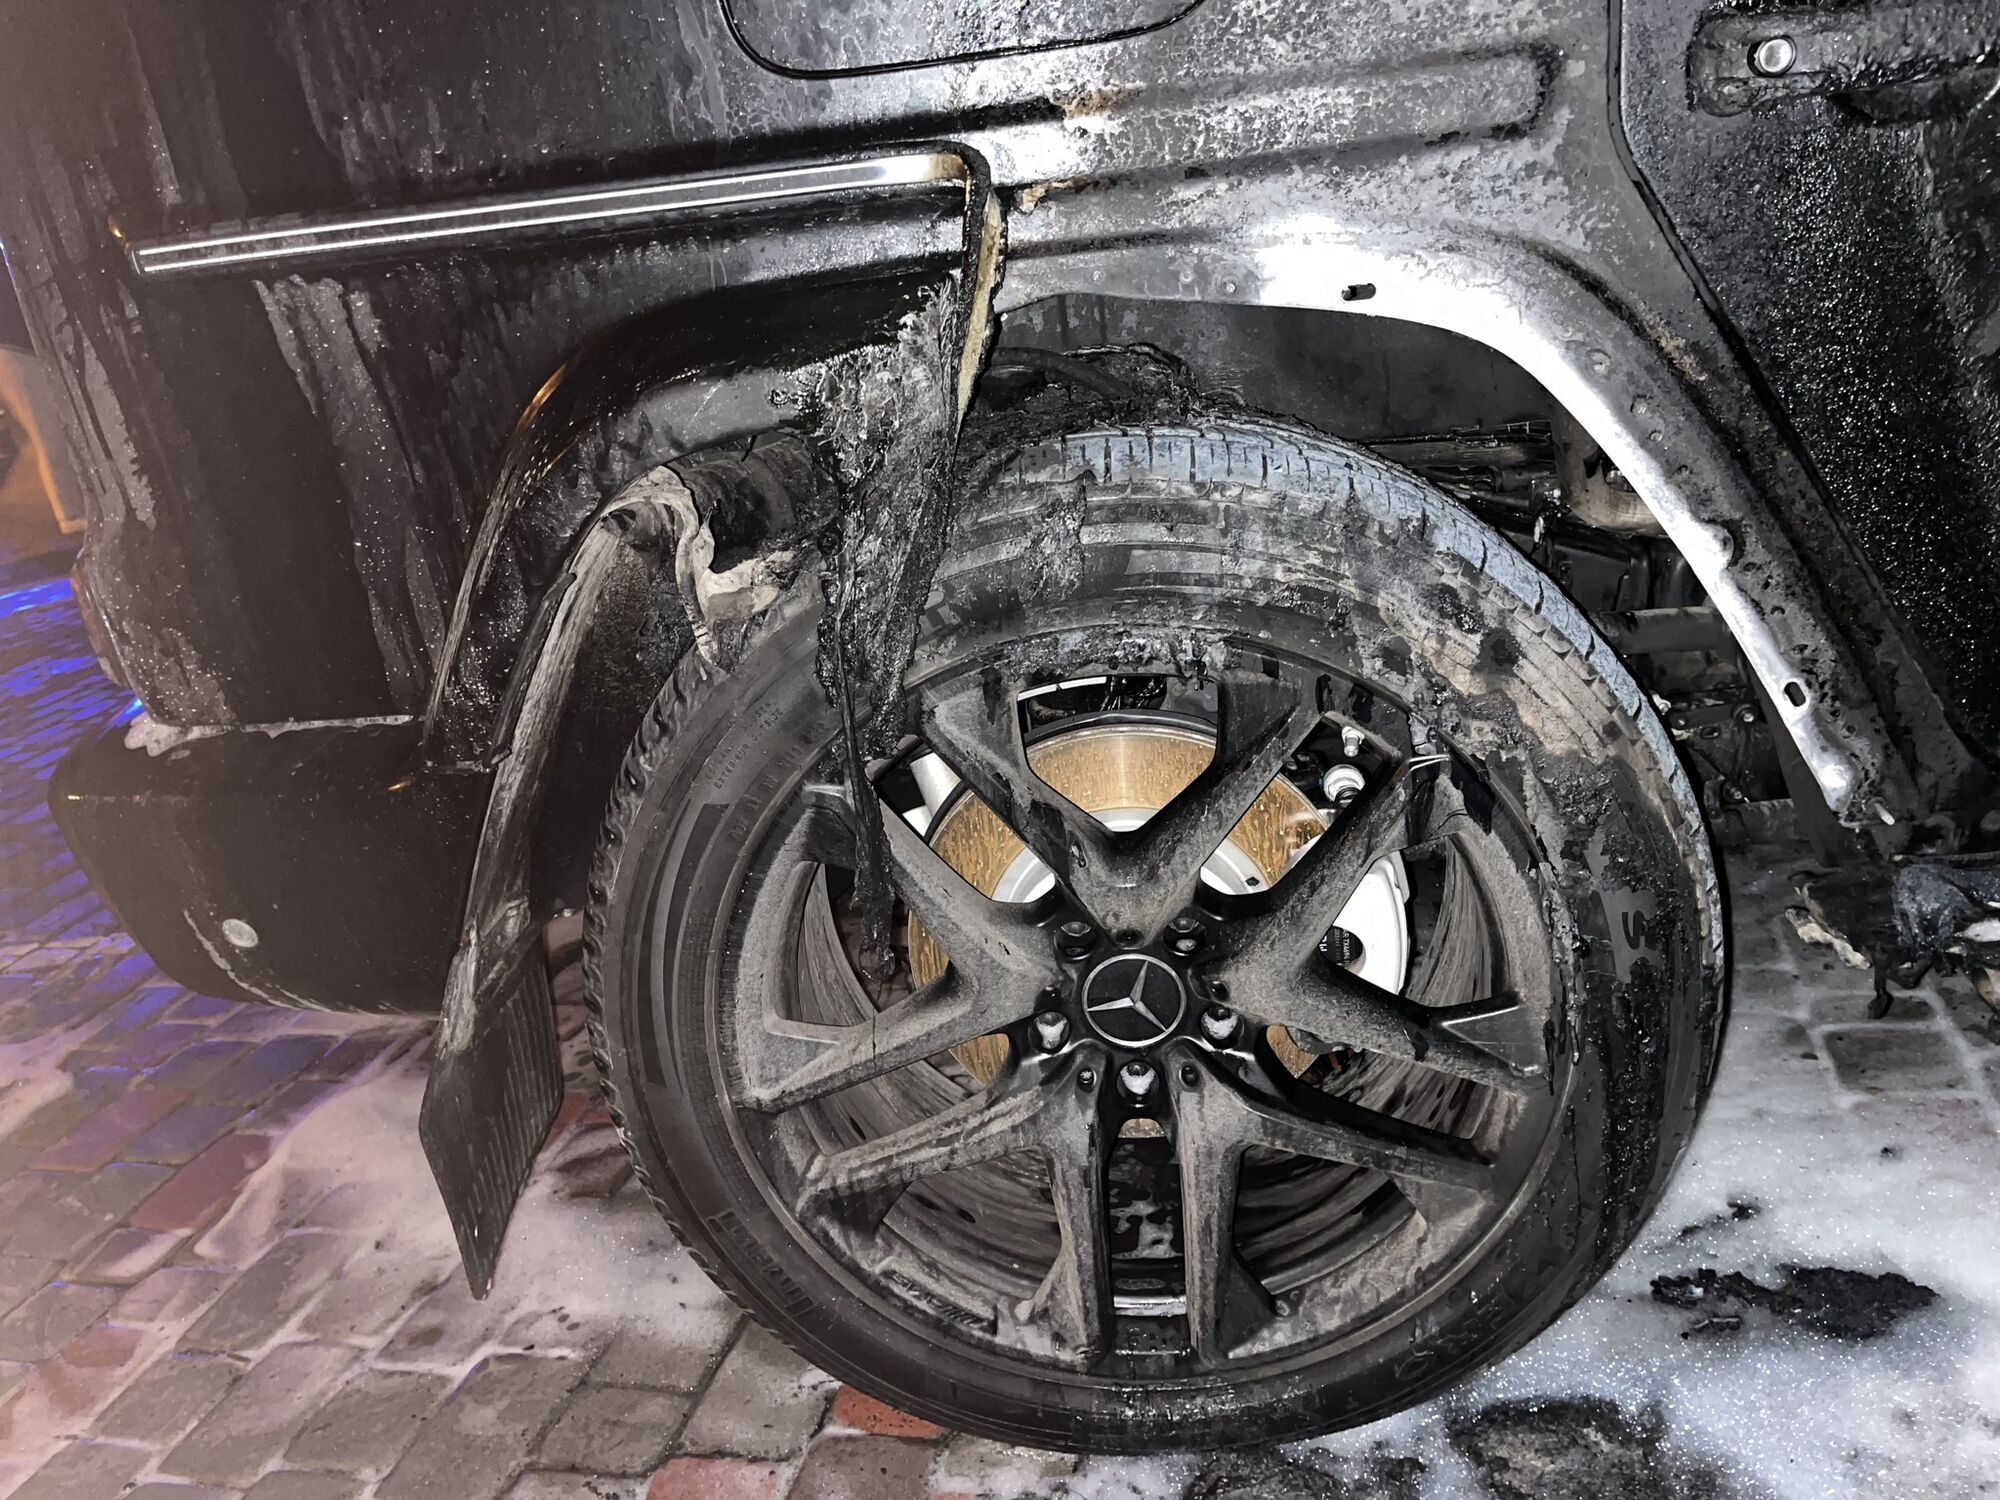 Авто спалахнуло вночі: у Рівному спалили Mercedes Gelandewagen підприємця. Фото 